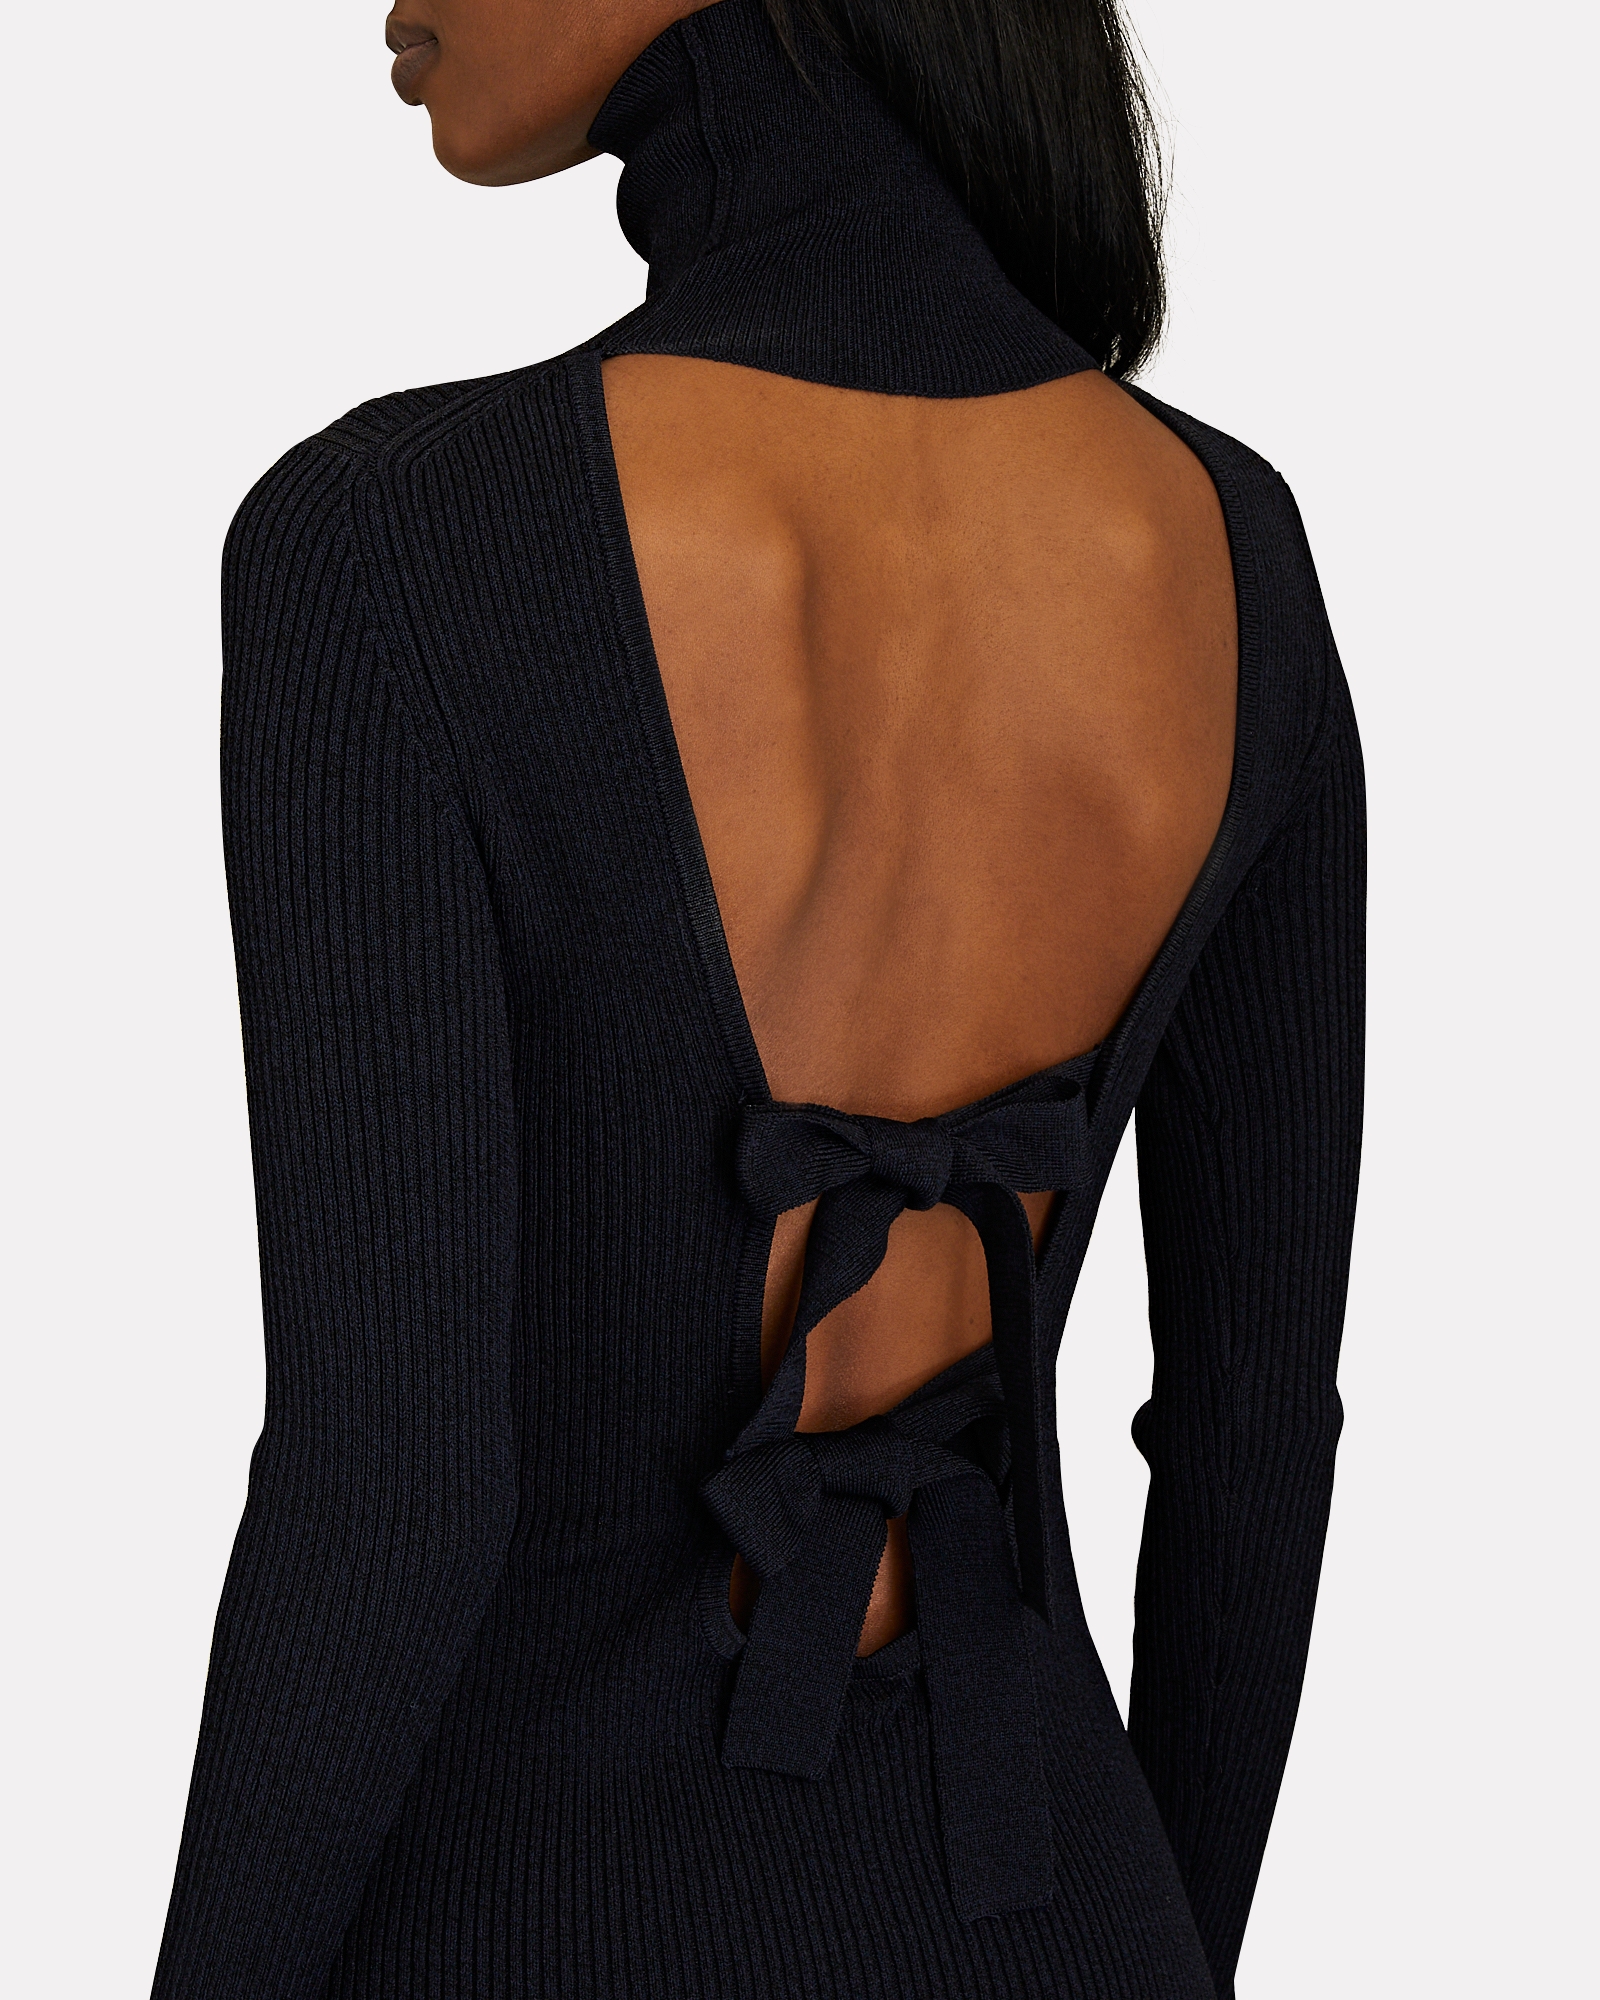 GANNI Open-Back Ruffled Rib-Knit Midi Dress | INTERMIX®